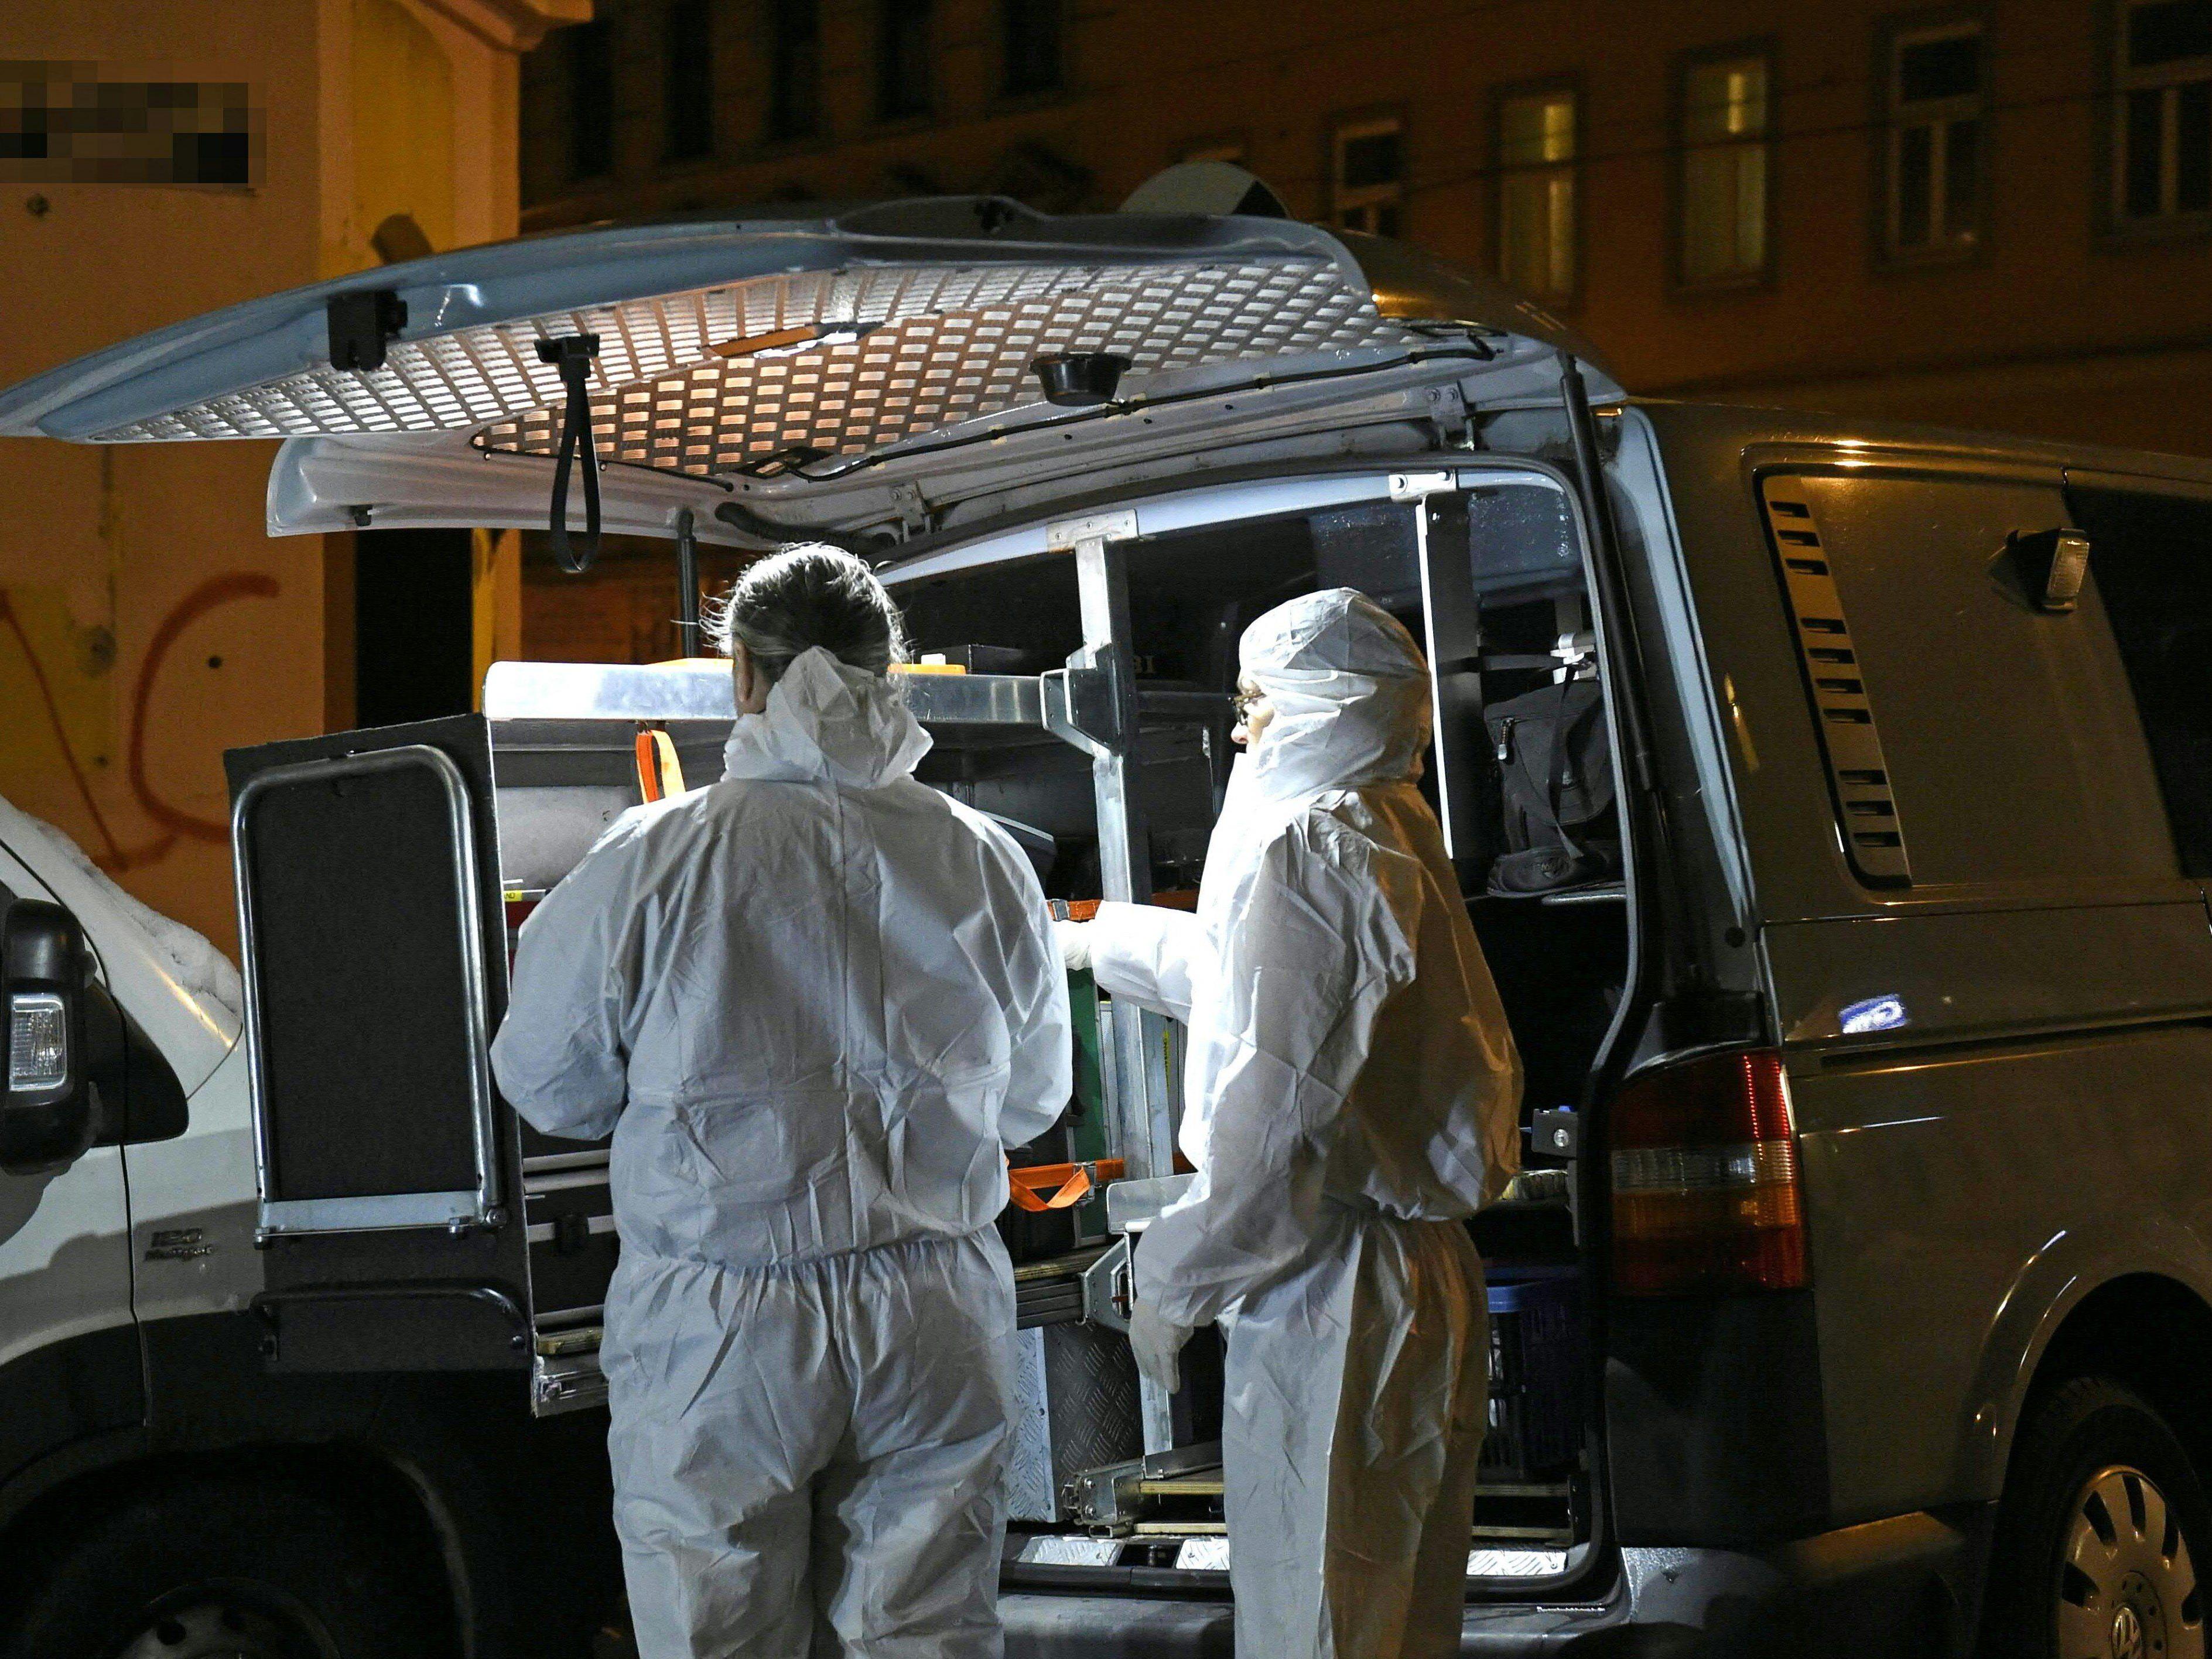 Leiche in Wien-Ottakring gefunden: Toter wies Spuren am Hals auf